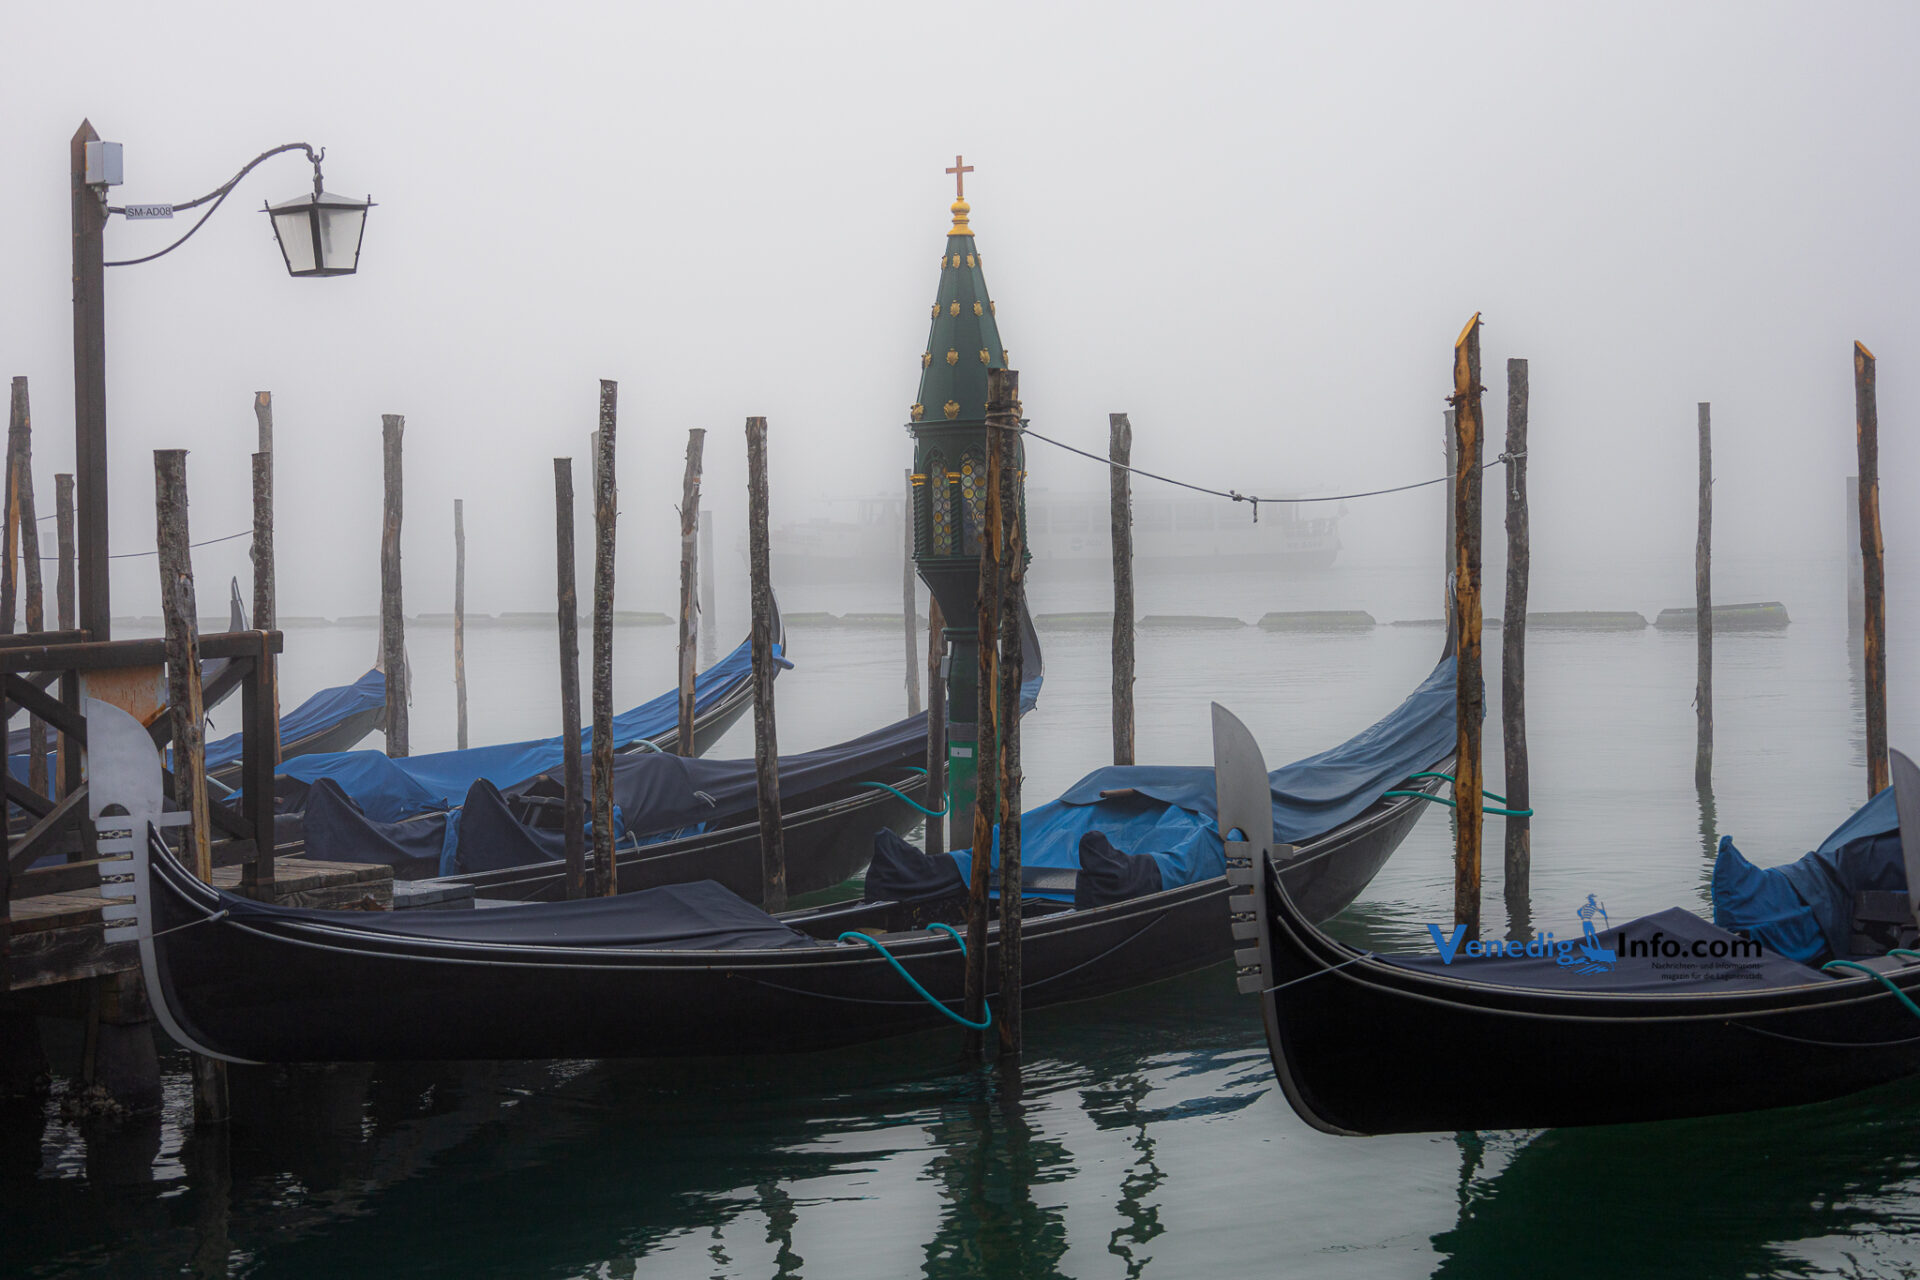 Venedig im Winter - lohnt sich eine Reise?